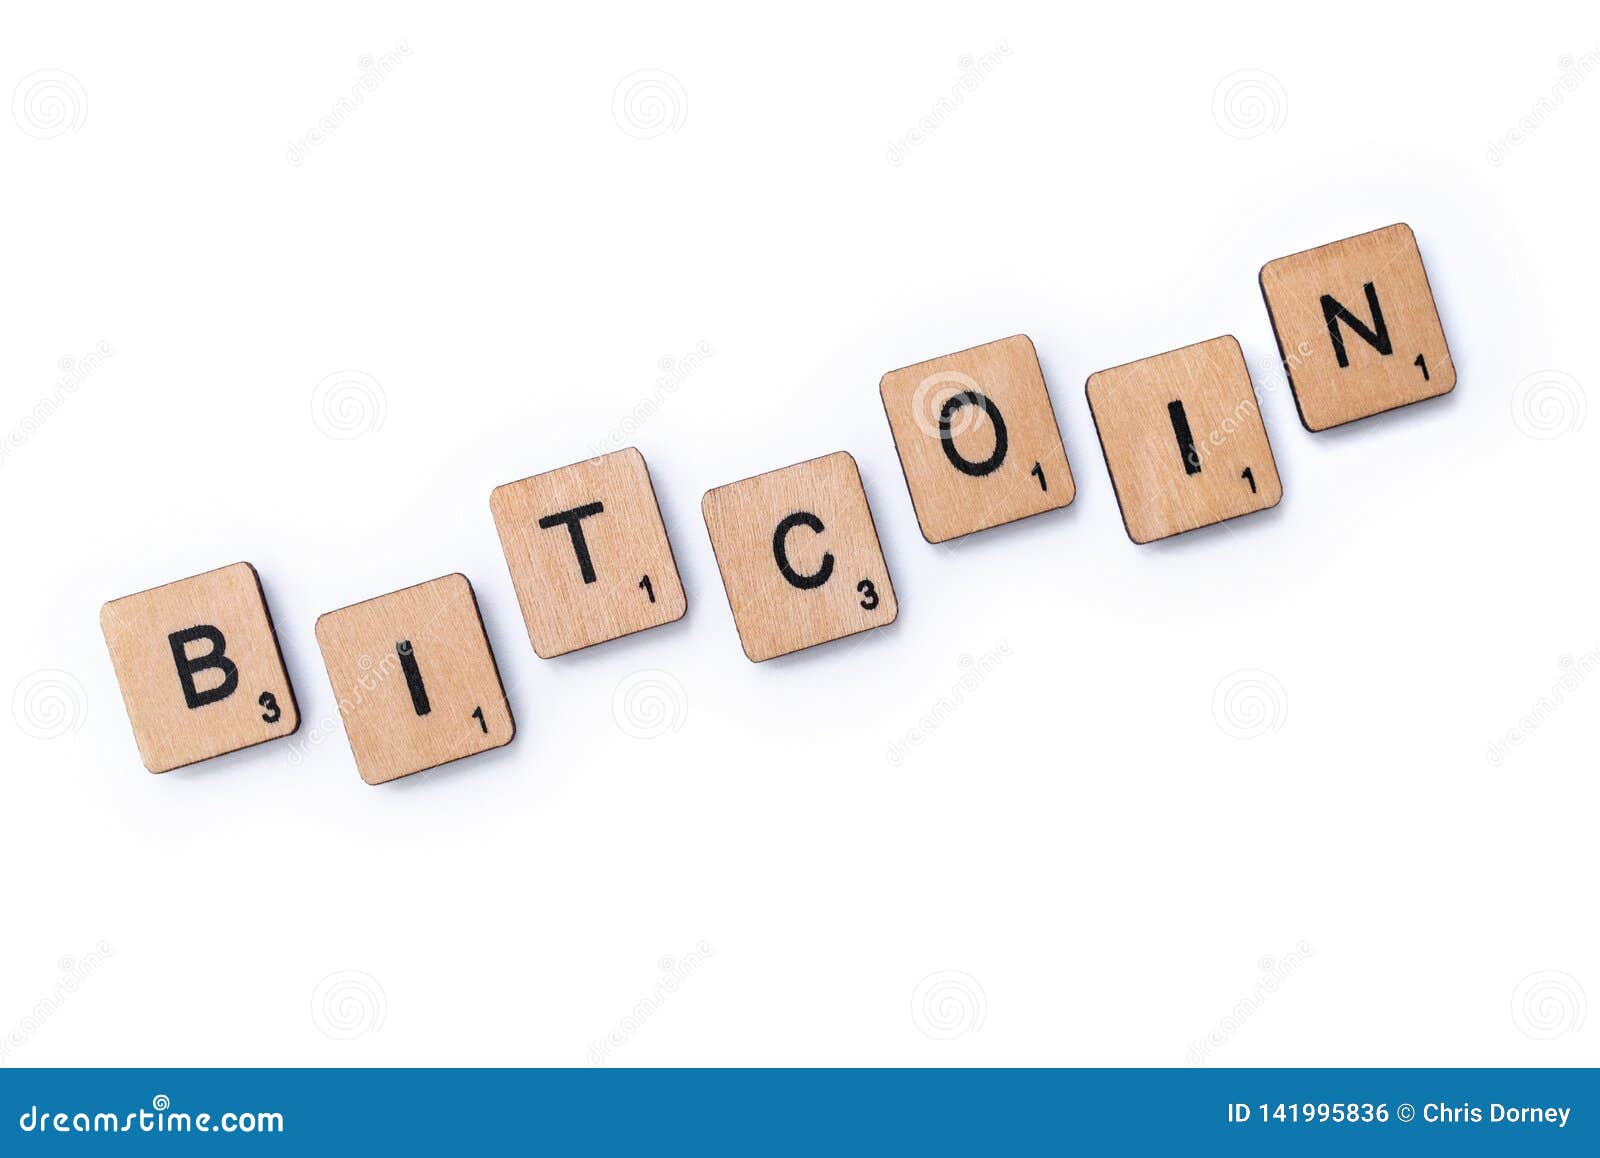 Bitcoin word dfs mafia crypto